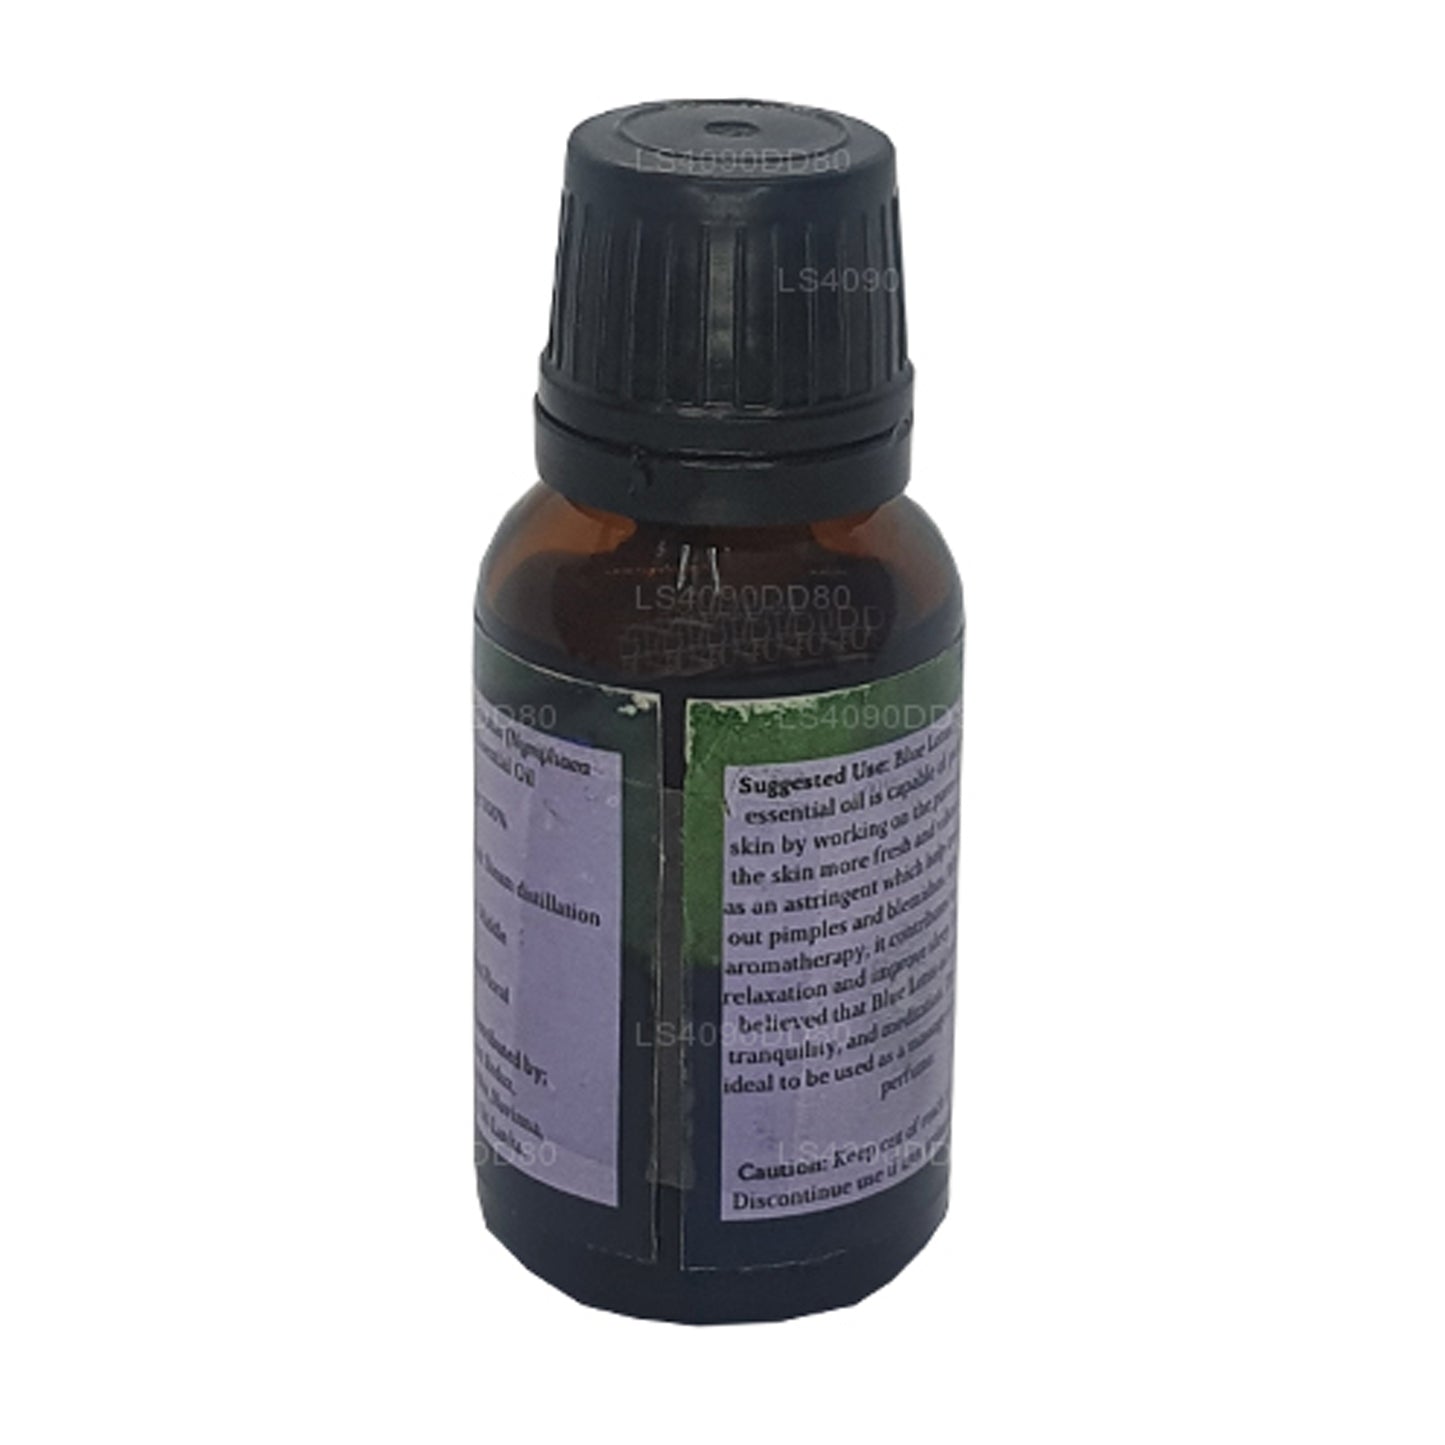 Lakpura Blue Lotus etherische olie (absoluut) (15 ml)